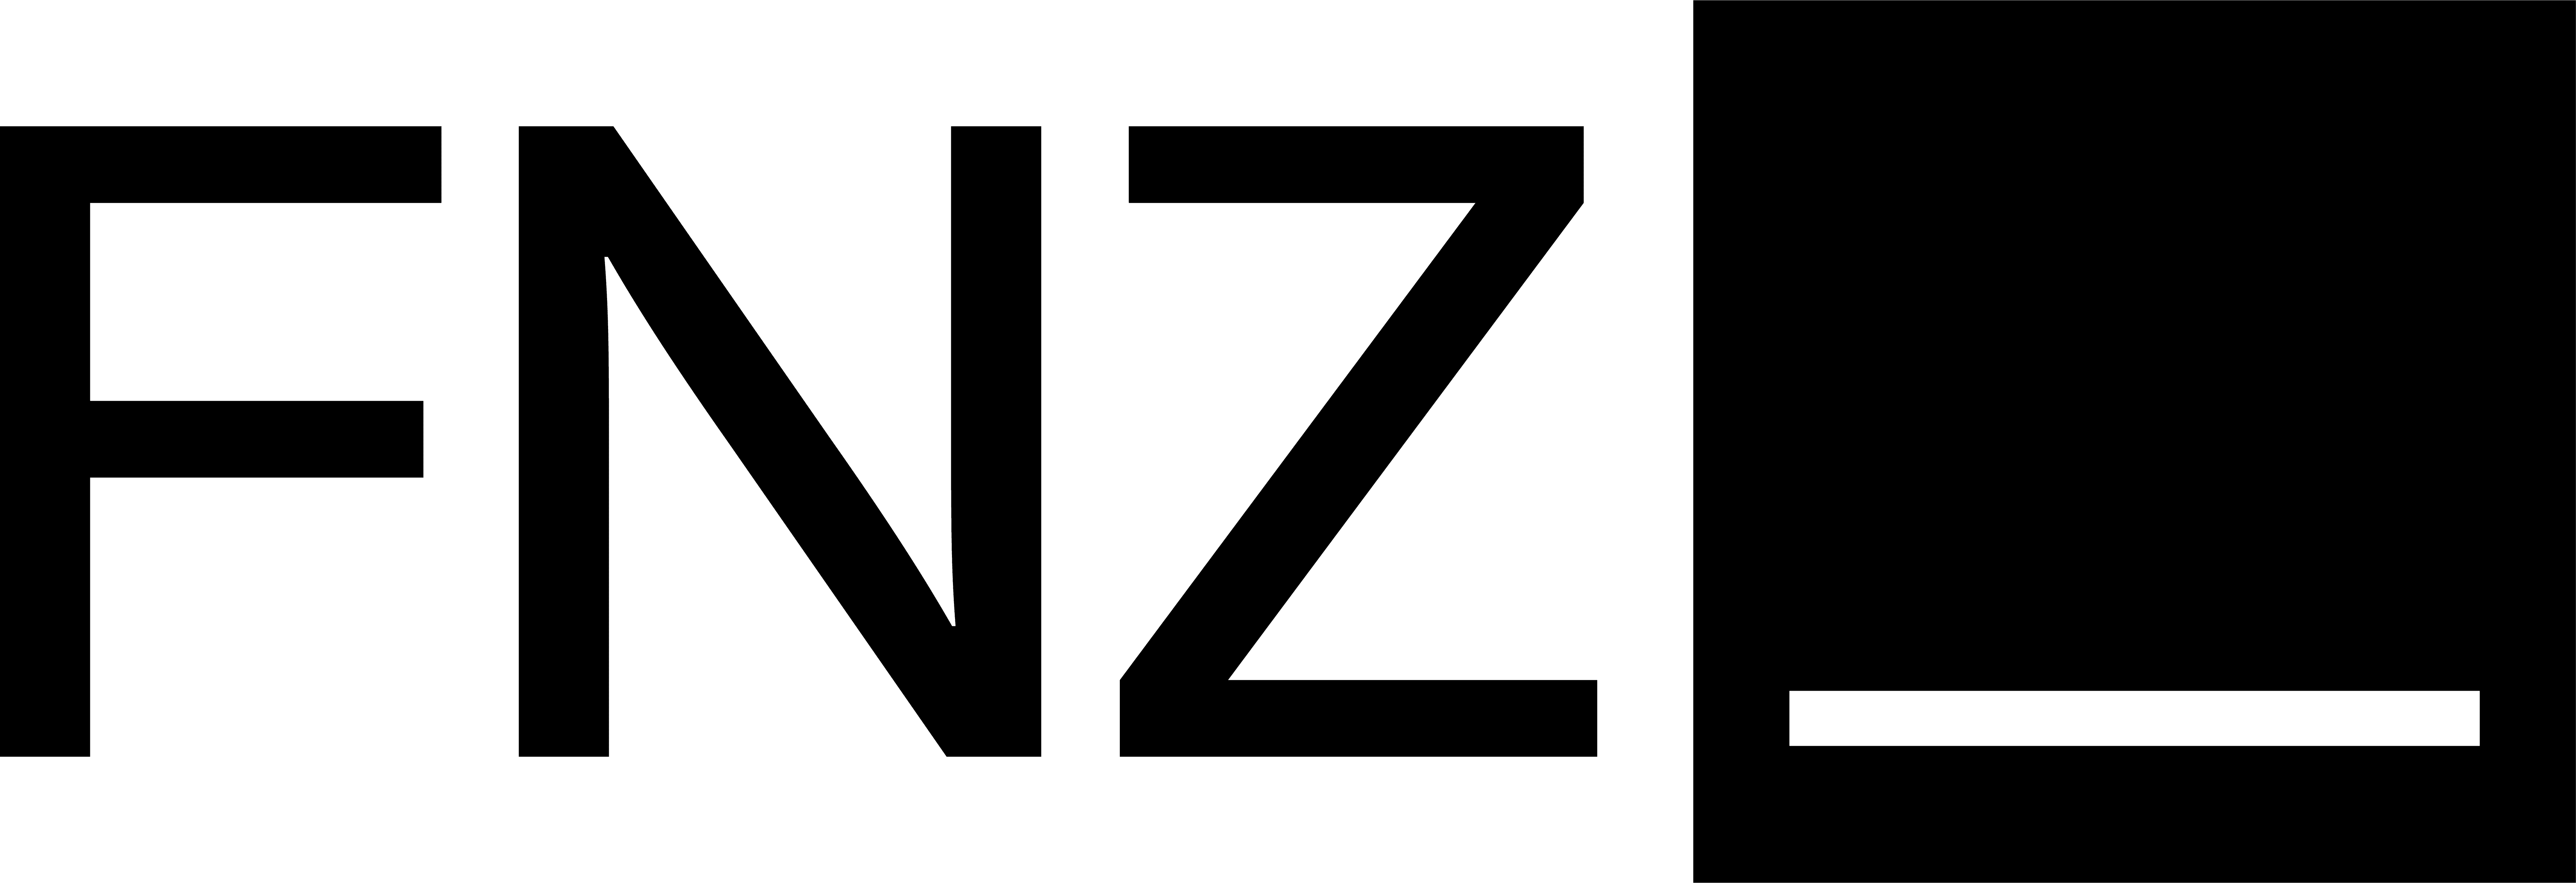 FNZ-Depot für juristische Personen